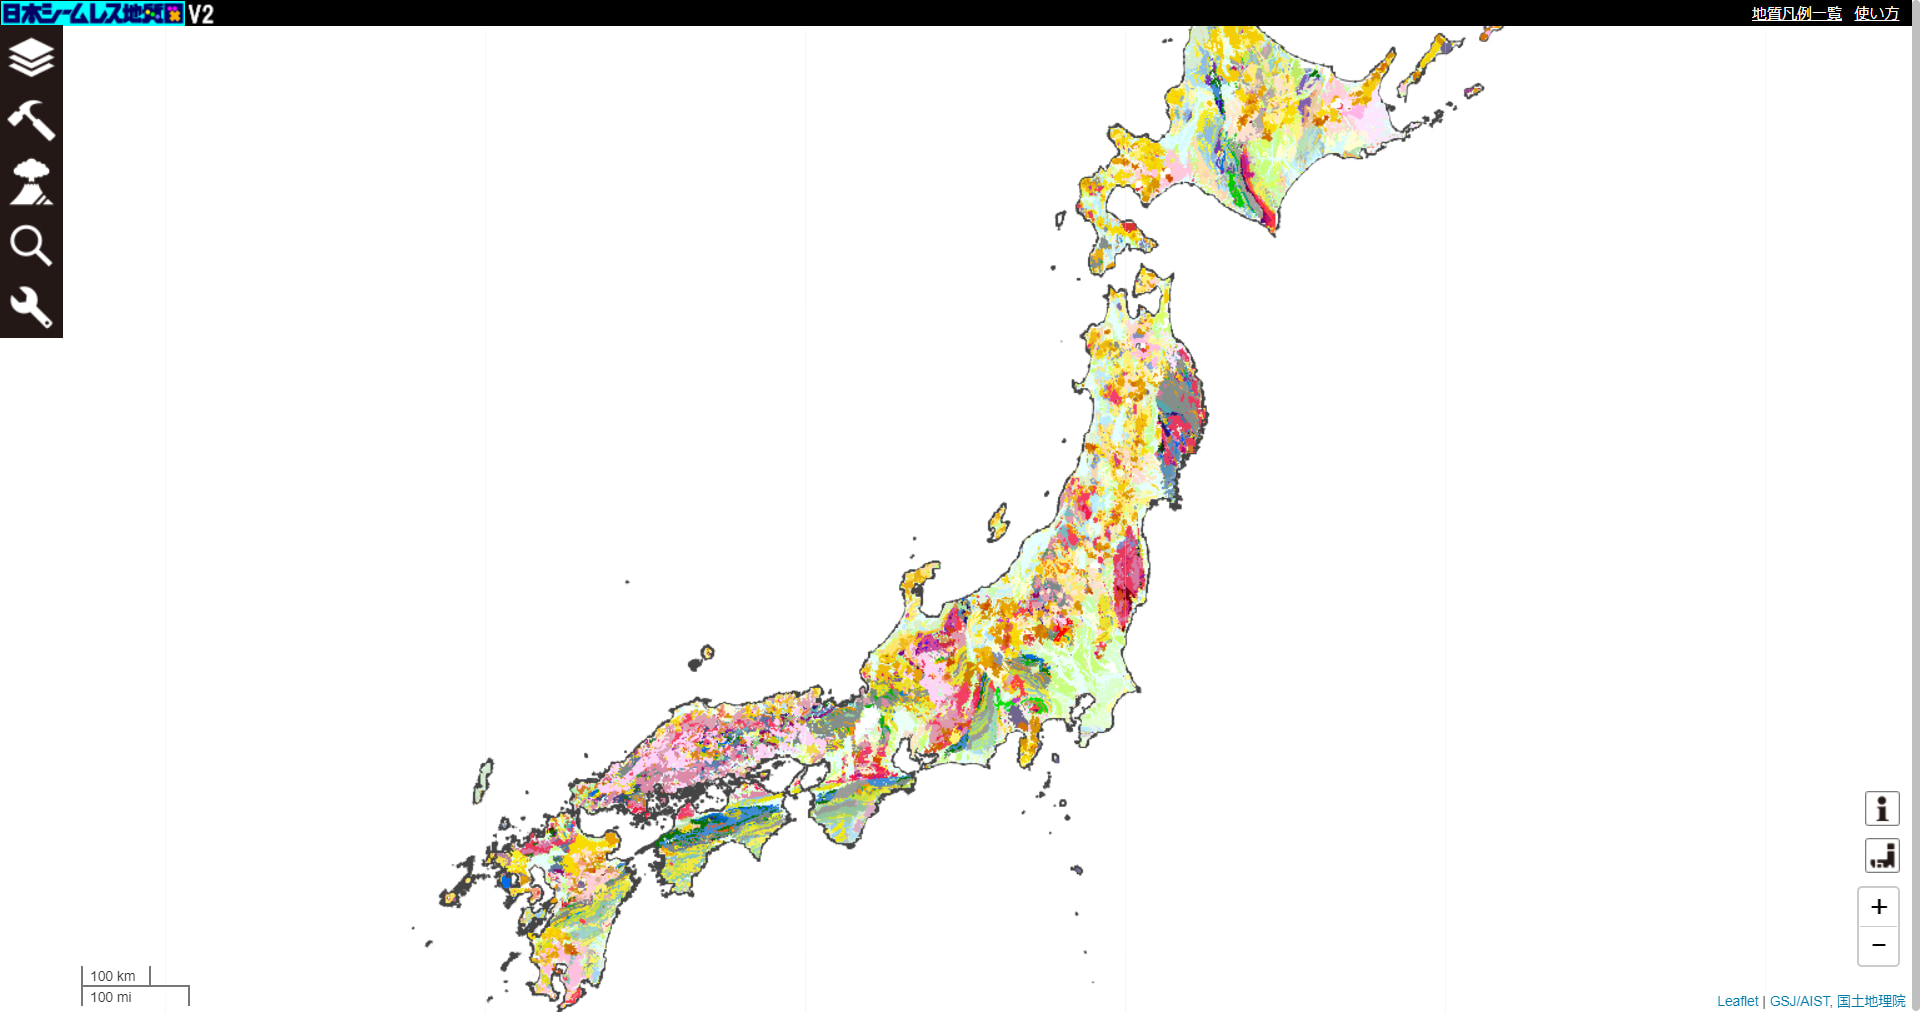 20万分の1日本シームレス地質図V2、出典：20万分の1日本シームレス地質図V2ウェブサイト（https://gbank.gsj.jp/seamless/v2/viewer/）